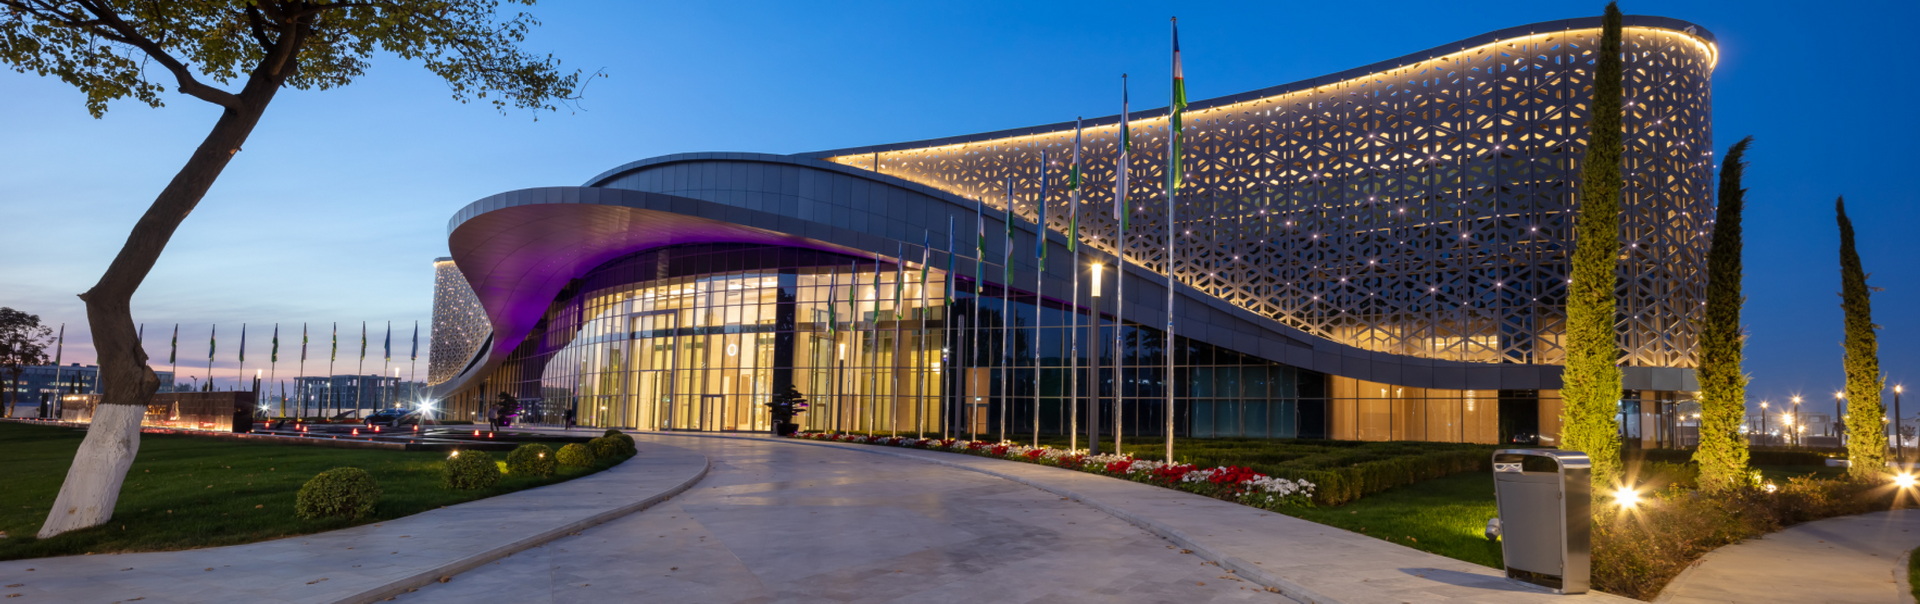 Tashkentcity Congress Centre and Hotel